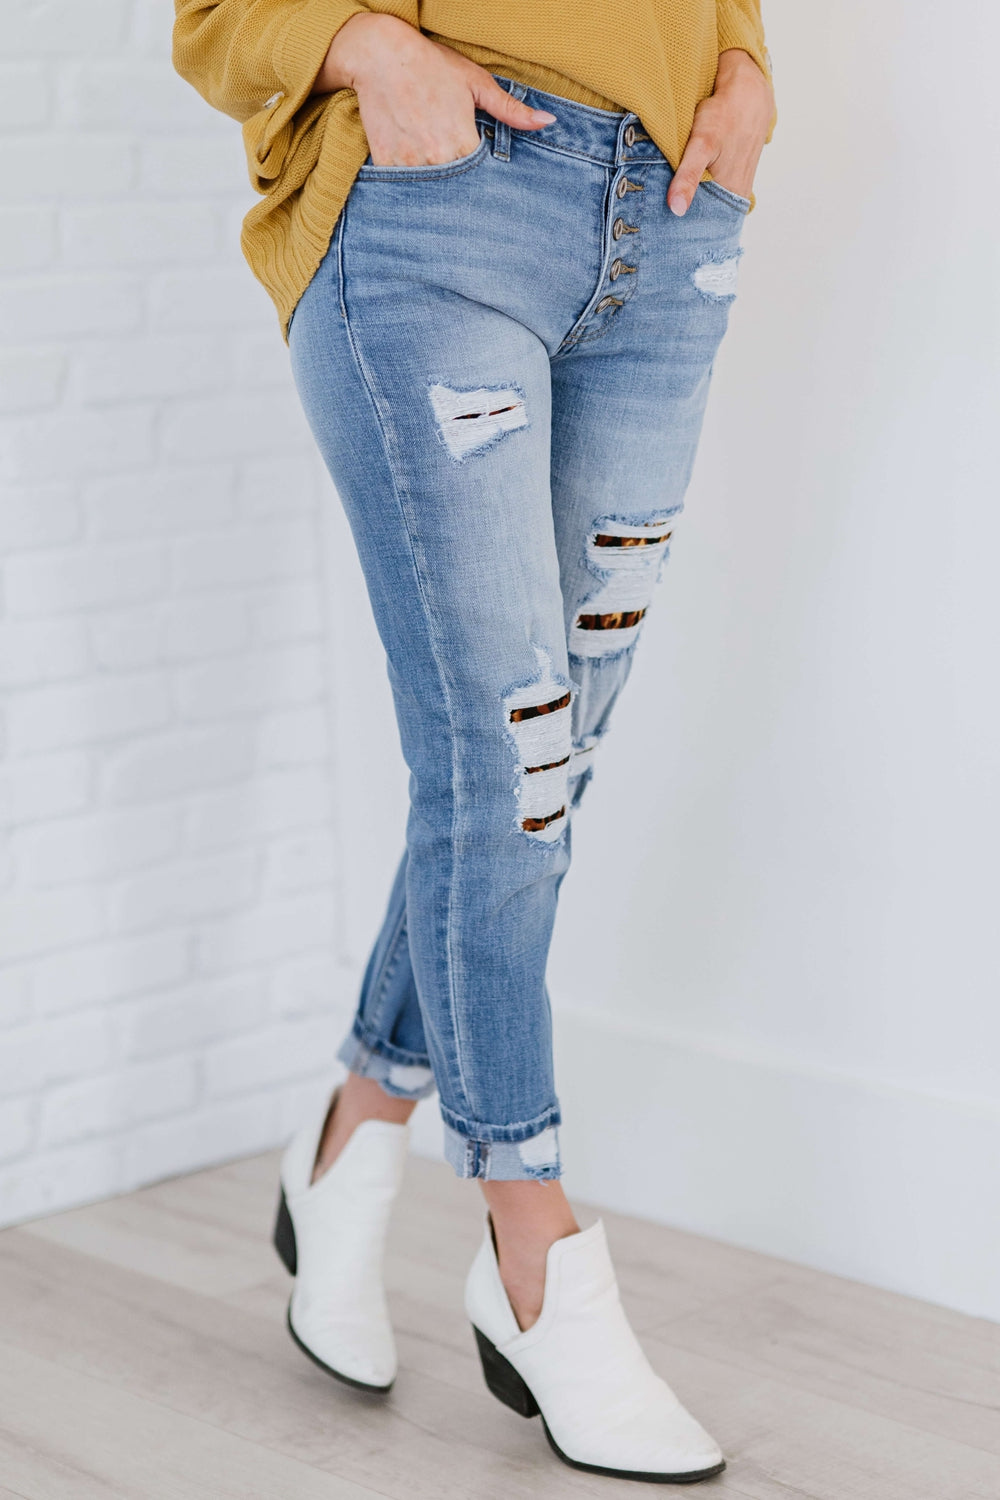 Kancan Untamed Leopard Lined Skinny Jeans